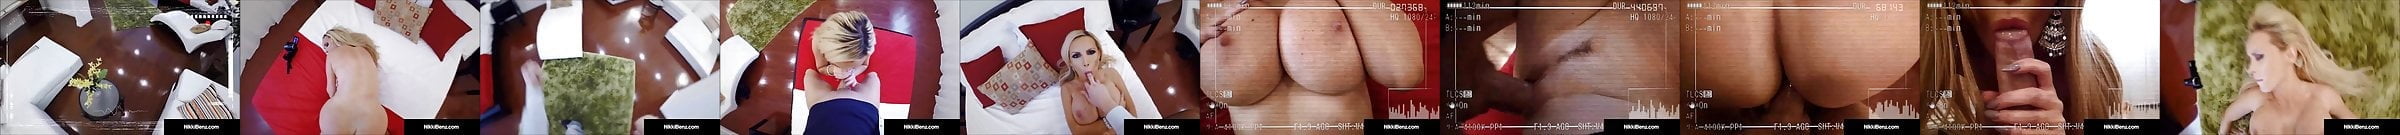 Nikki Benz Free Porn Star Videos 581 Xhamster